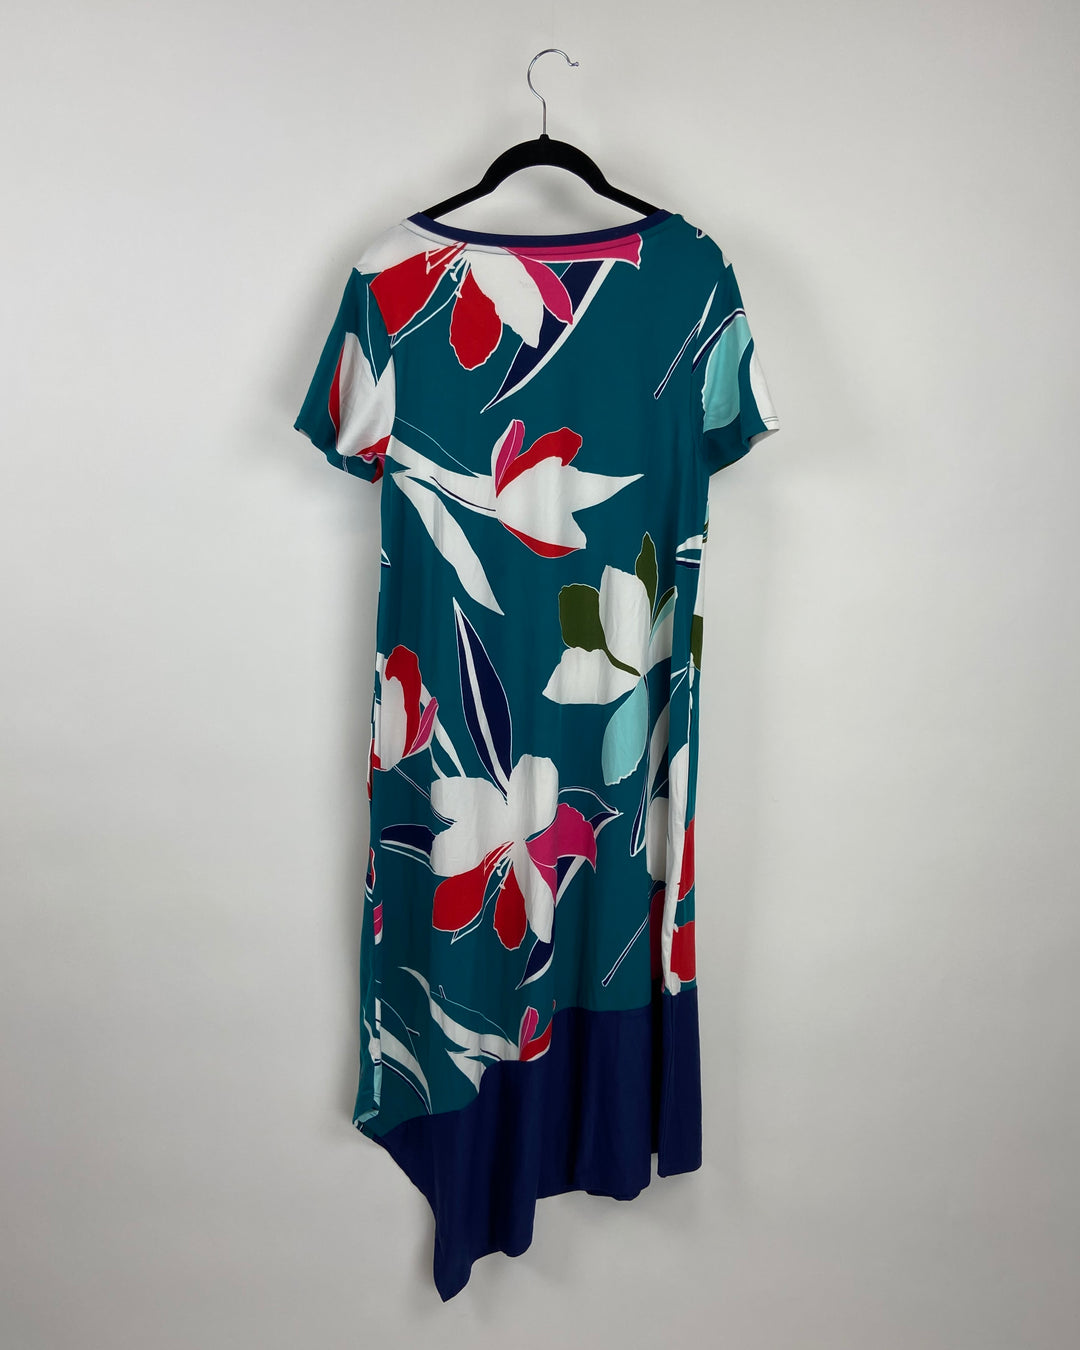 Floral Short Sleeve Dress - Small/Medium